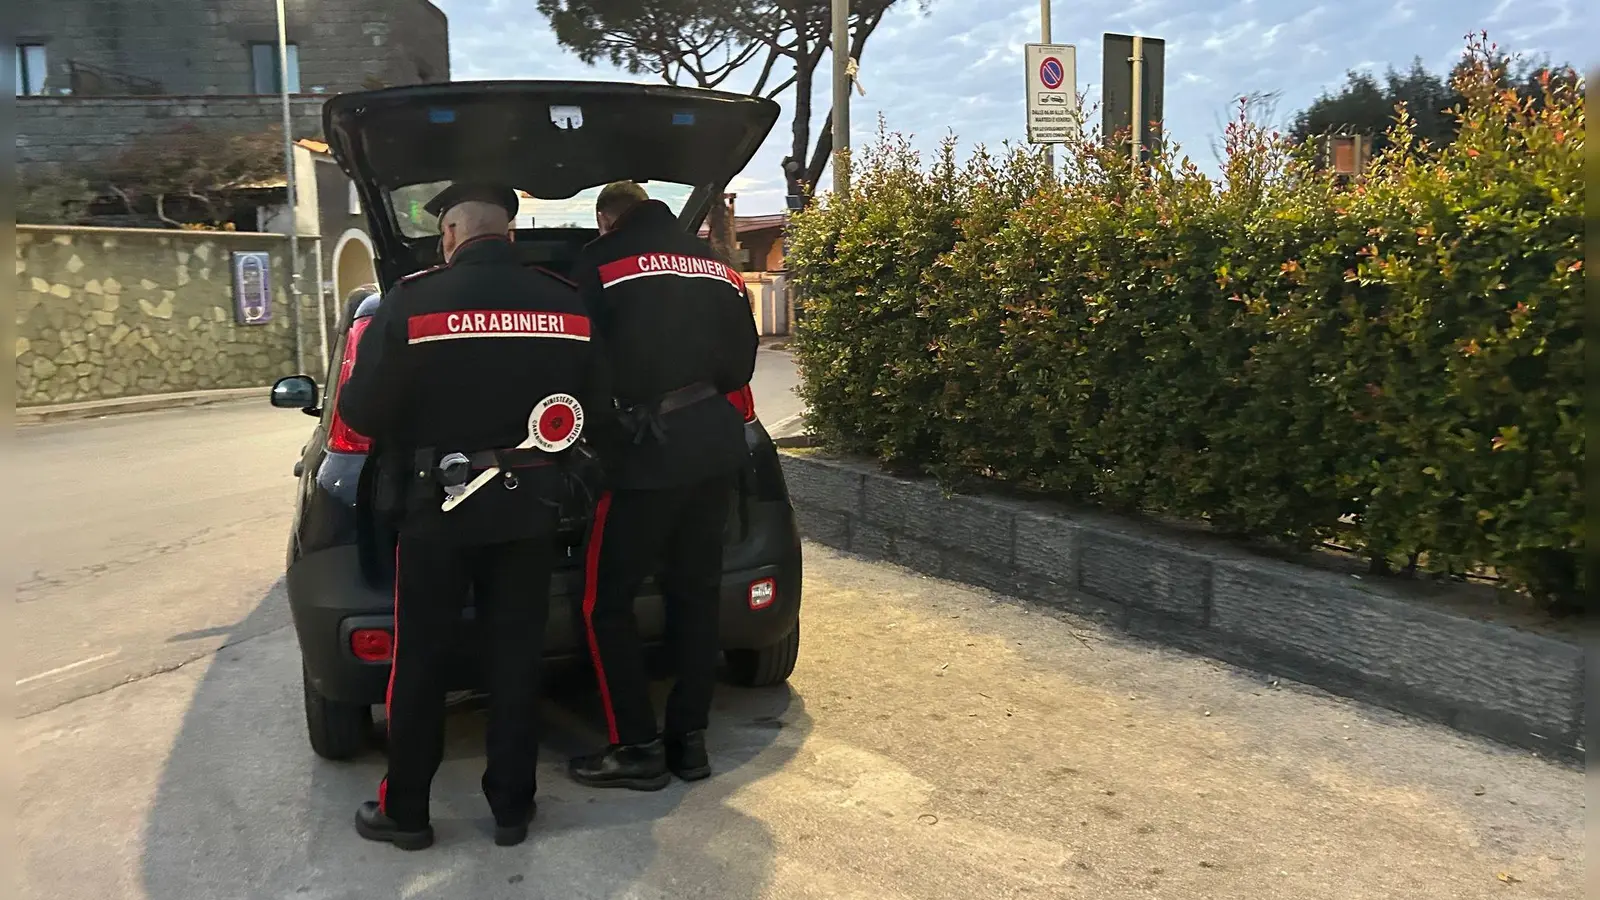 Nach einem Streit wird ein Mann in Italien laut Polizei von seinem Bruder enthauptet. Die Carabinieri ermitteln. (Archivbild) (Foto: Christoph Sator/dpa)